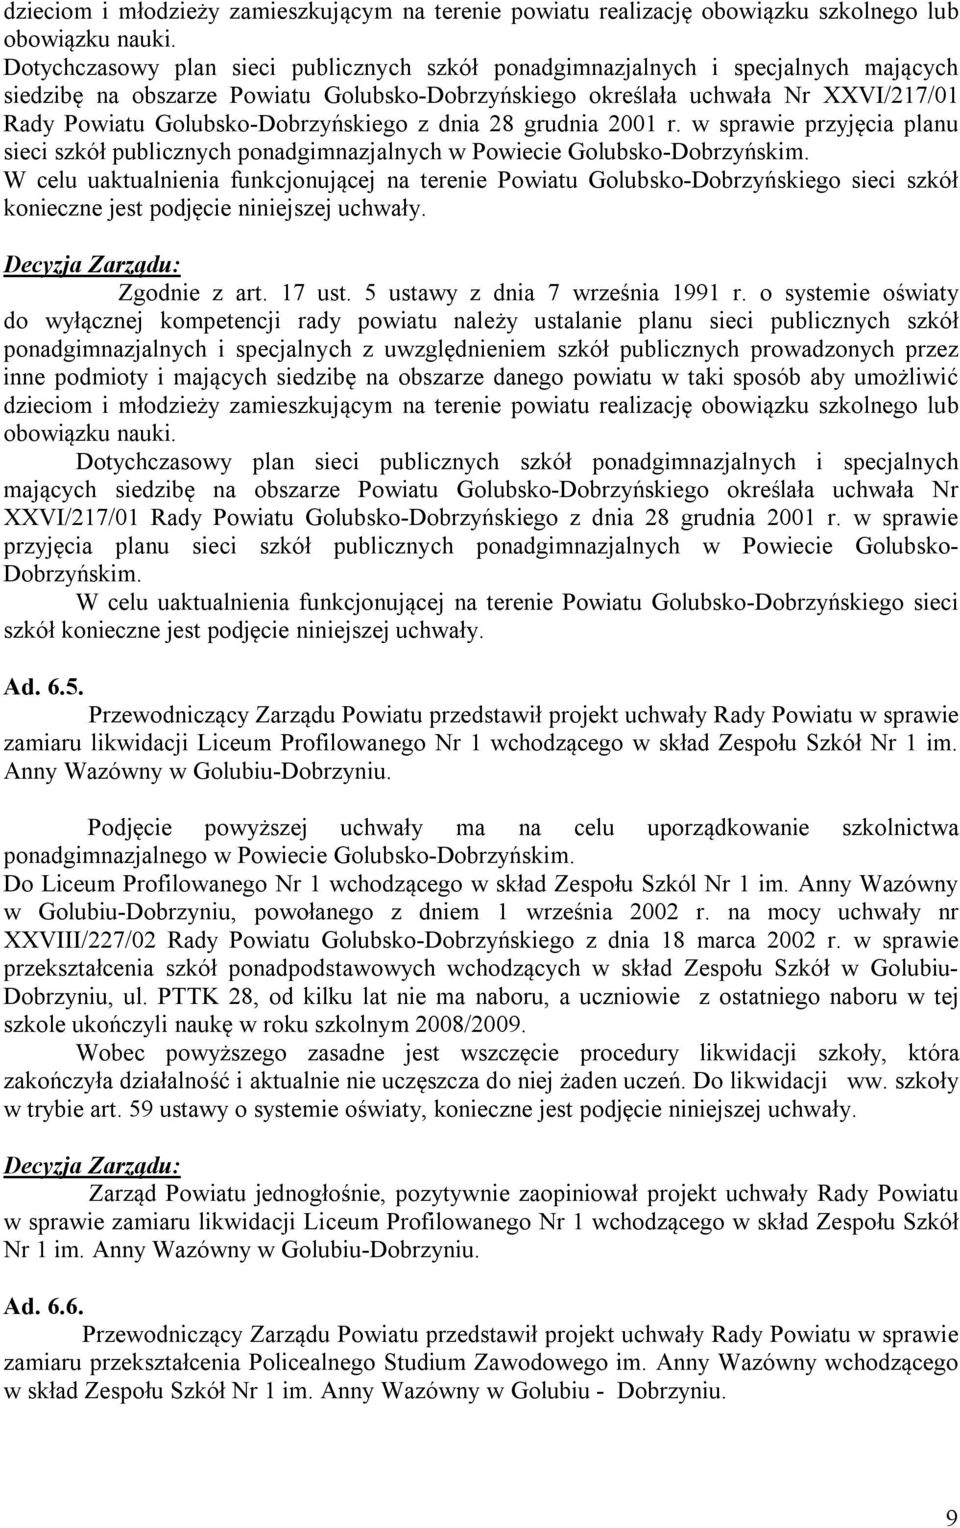 Golubsko-Dobrzyńskiego z dnia 28 grudnia 2001 r. w sprawie przyjęcia planu sieci szkół publicznych ponadgimnazjalnych w Powiecie Golubsko-Dobrzyńskim.